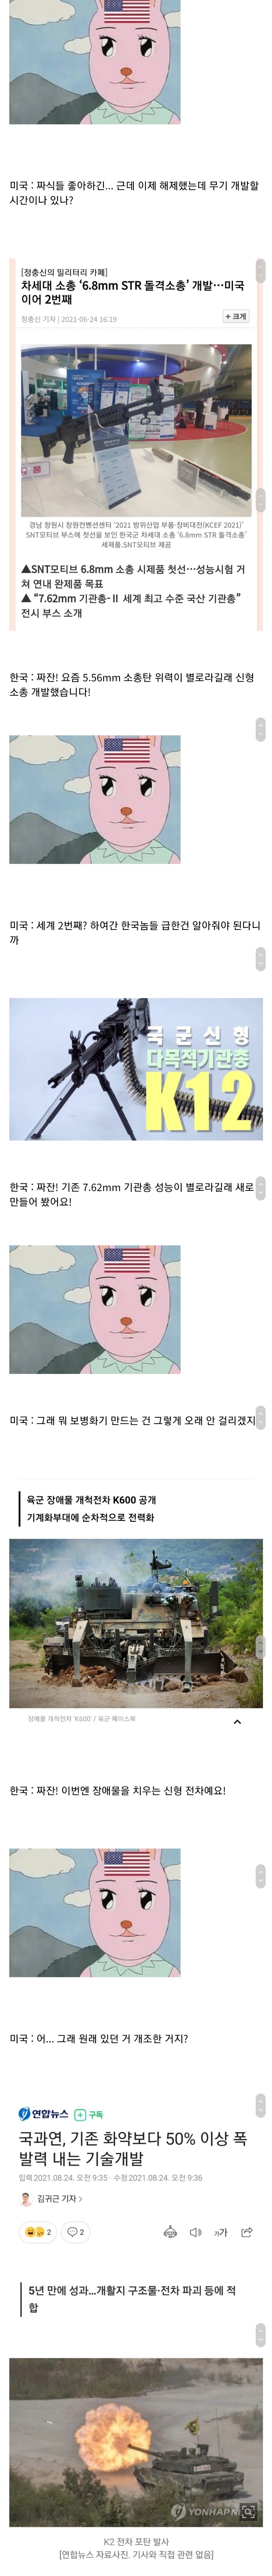 수상할 정도로 빠른 대한민국 국방력 증가.